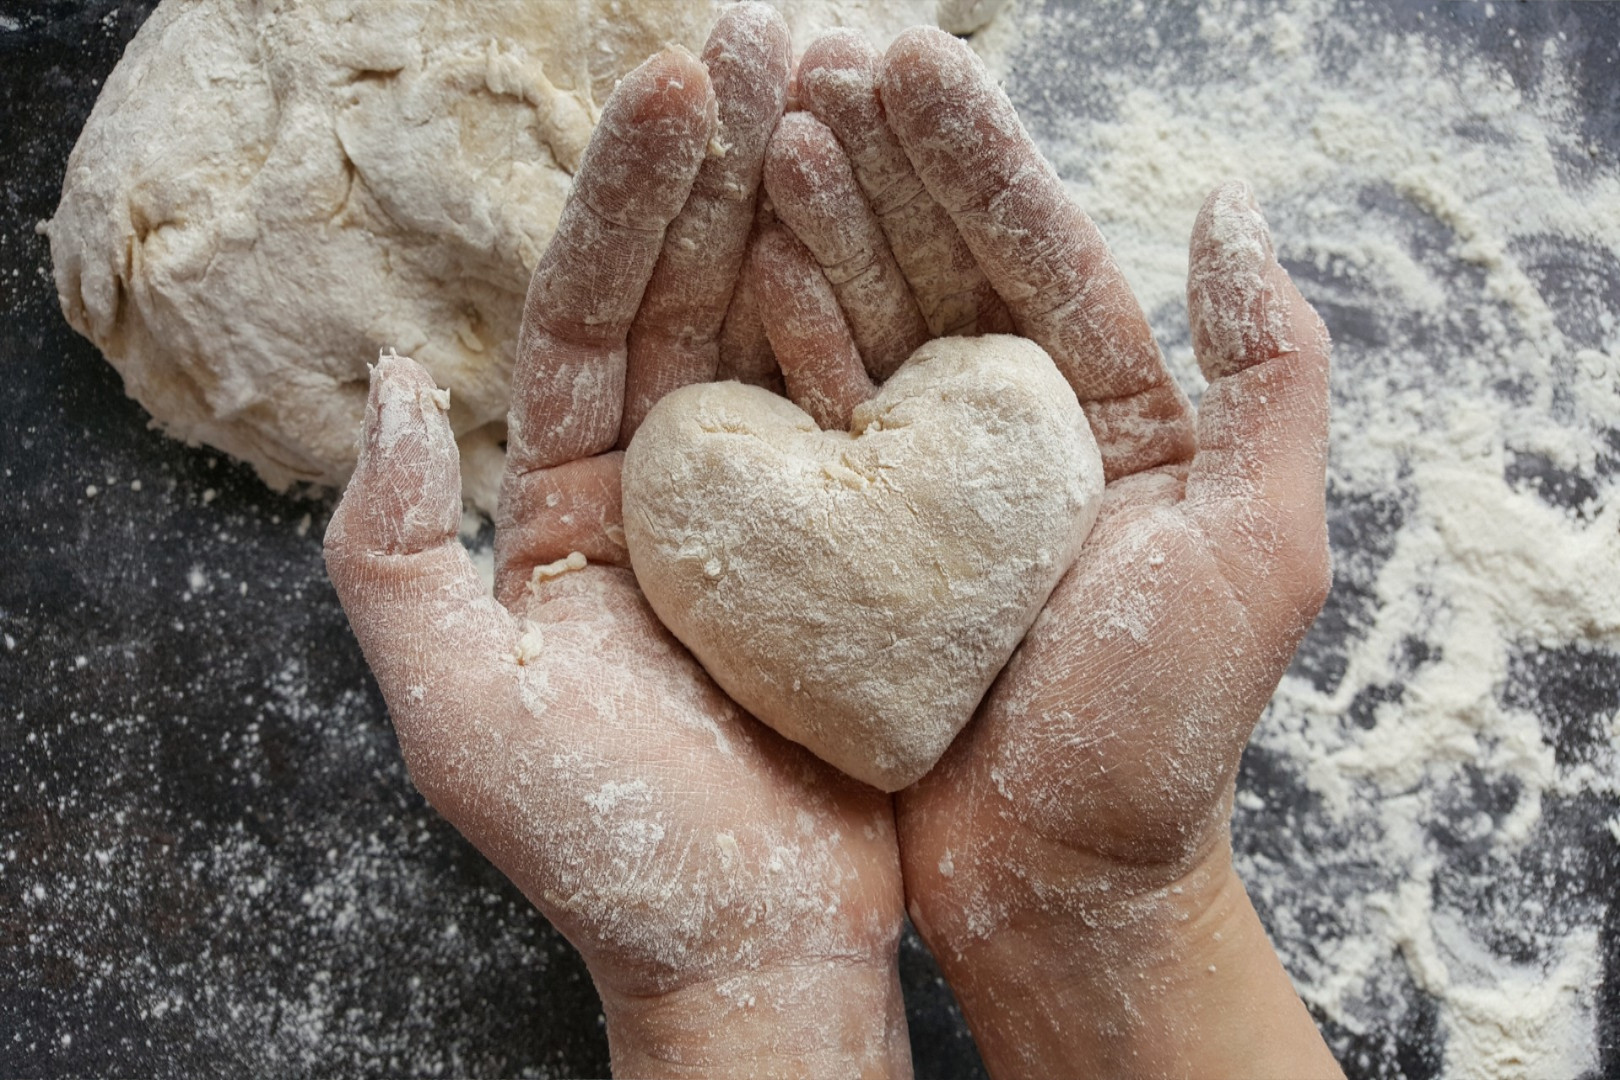 Dłonie obsypane mąką trzymające ciasto w kształcie serca na tle ciemnego blatu posypanego mąką, symbolizujące pasję do pieczenia w Cukierni Śnieżka w Gorzowie.